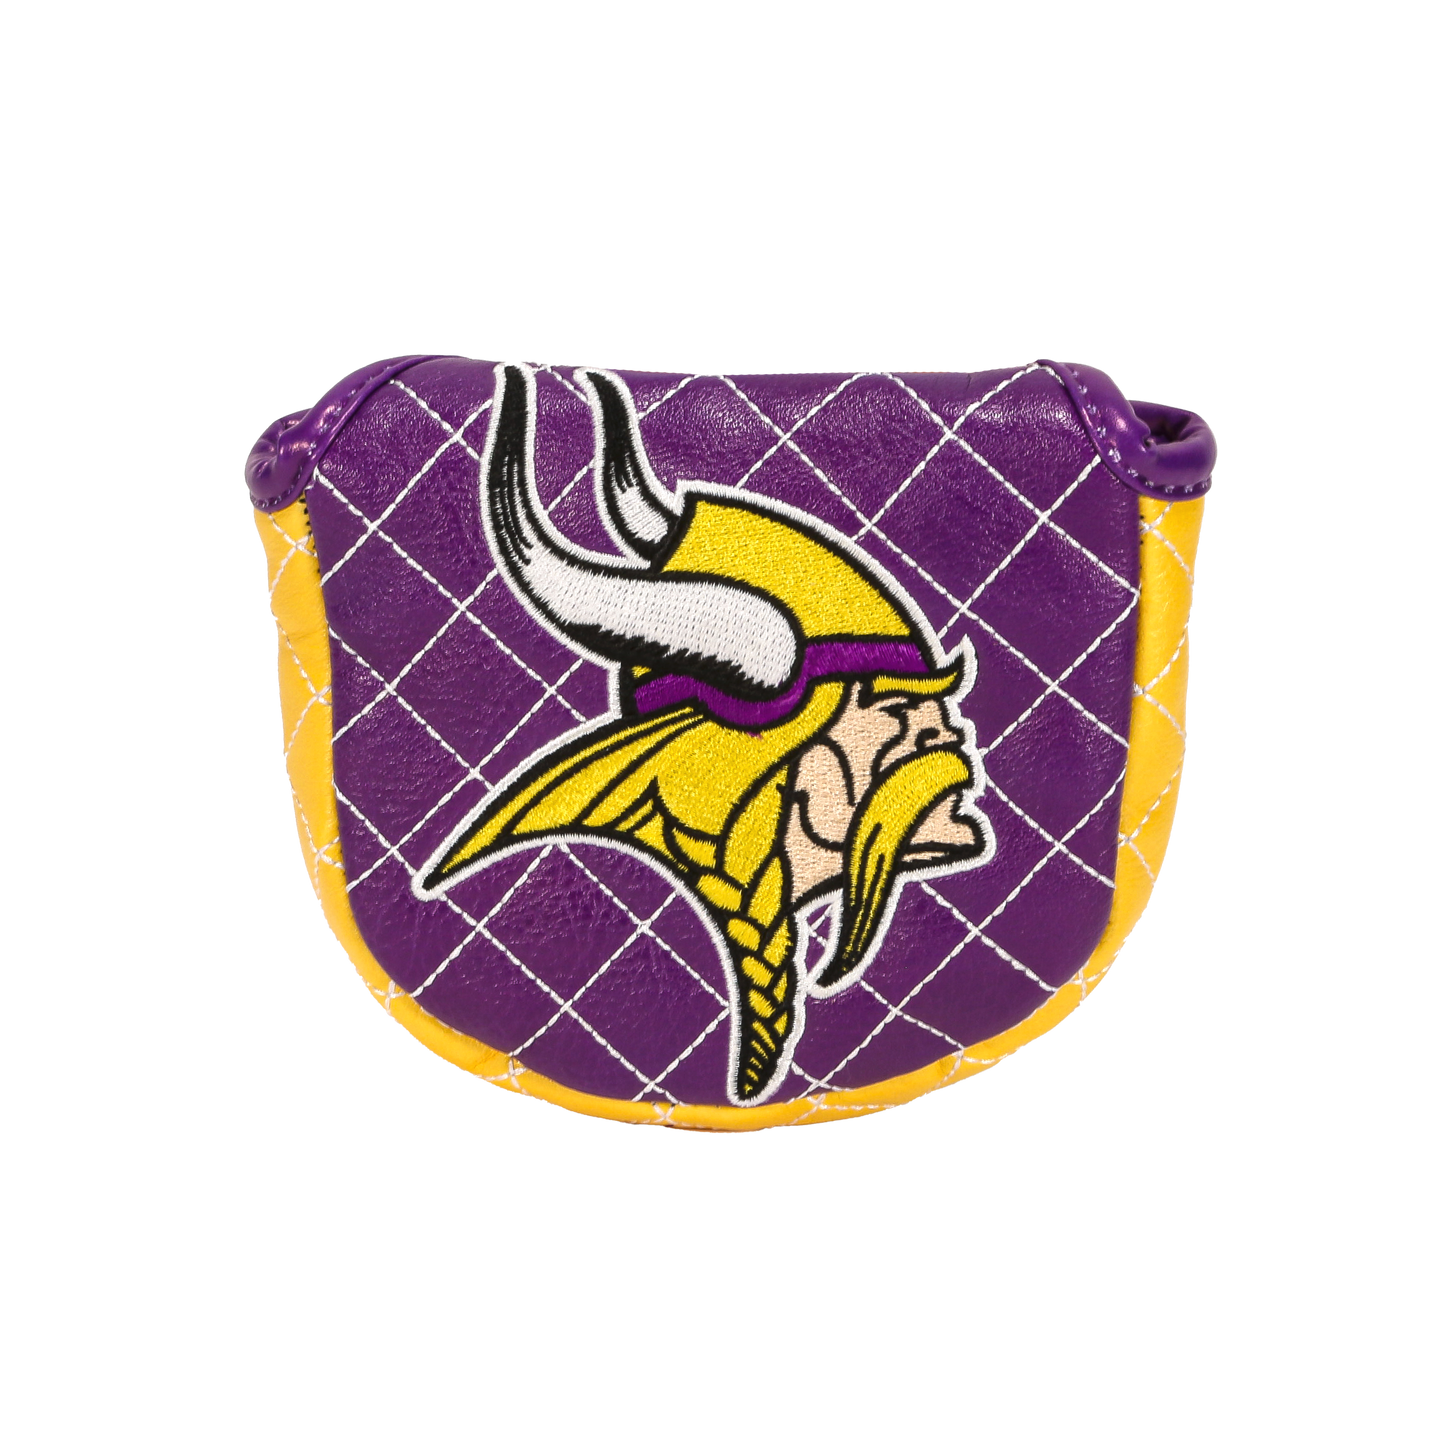 Minnesota "Vikings" Mallet Putter Cover